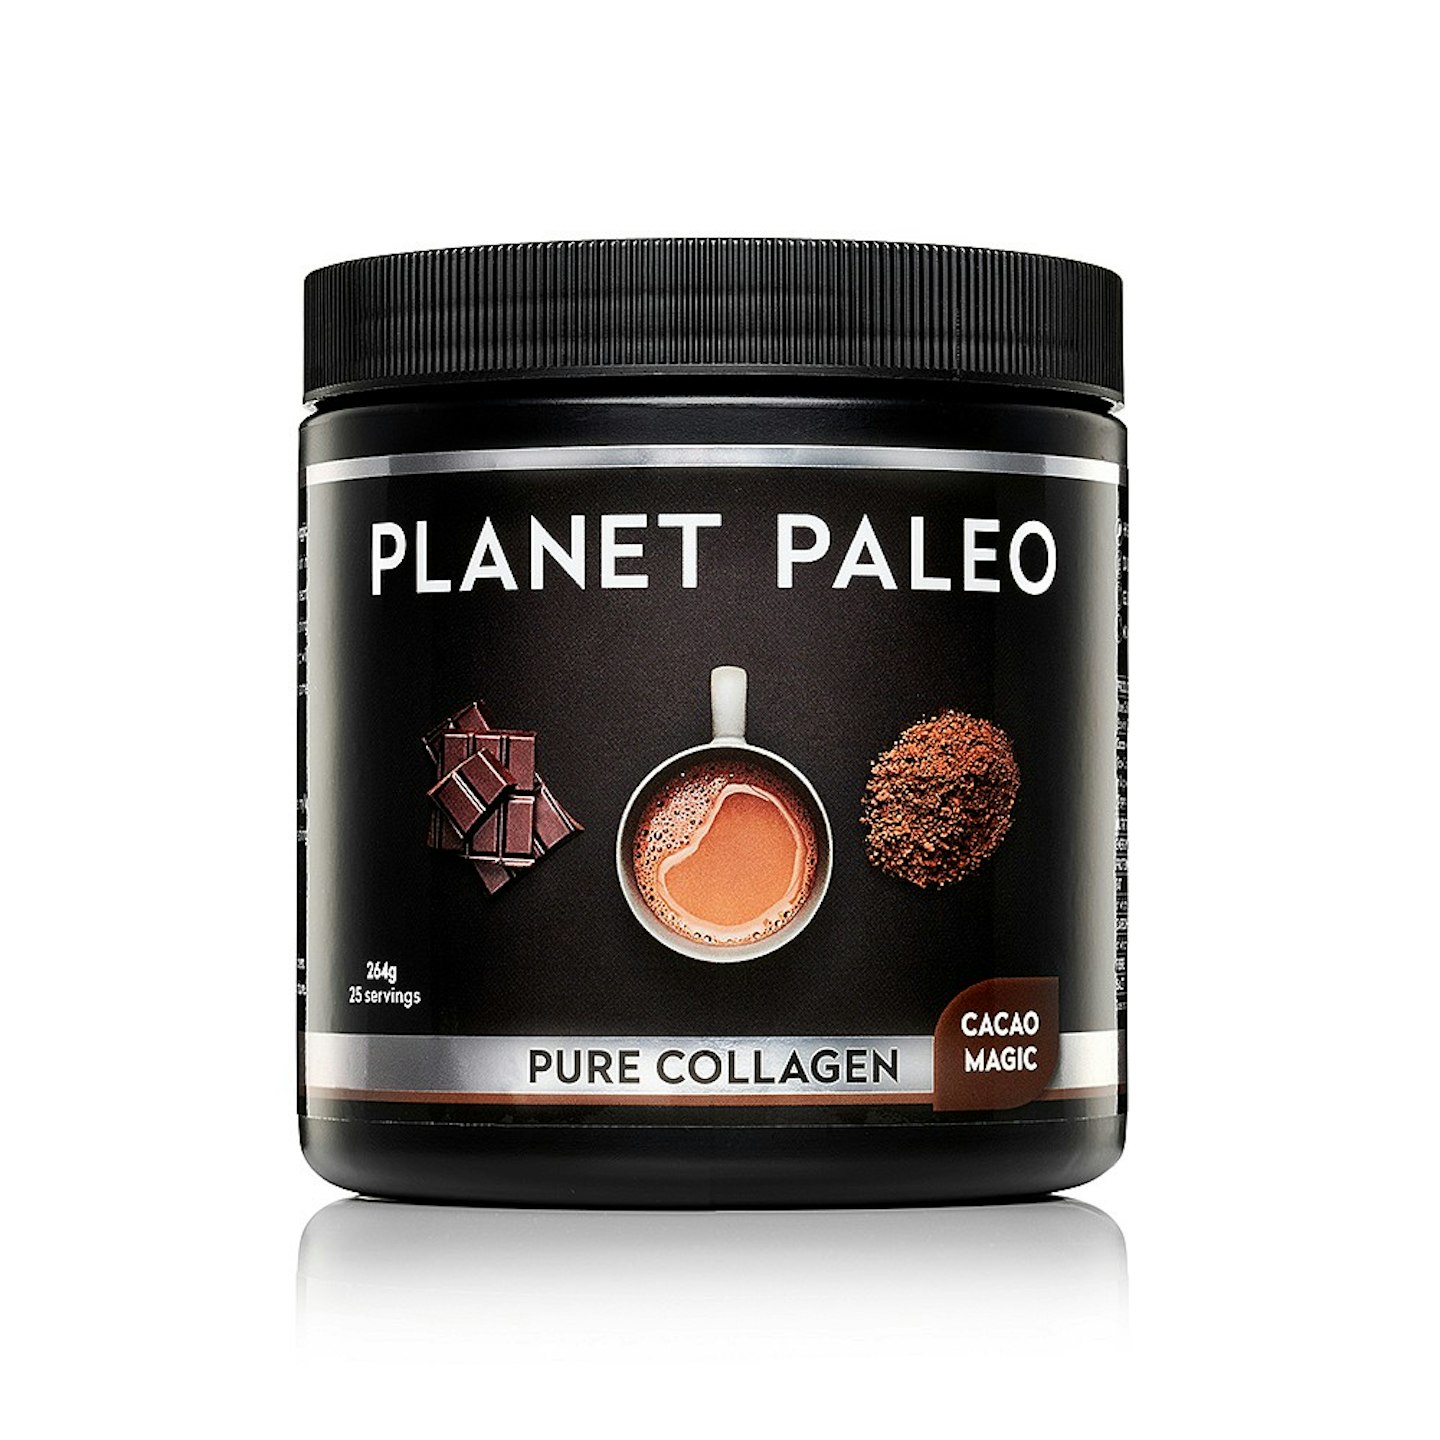 Planet Paleo Cacao Magic